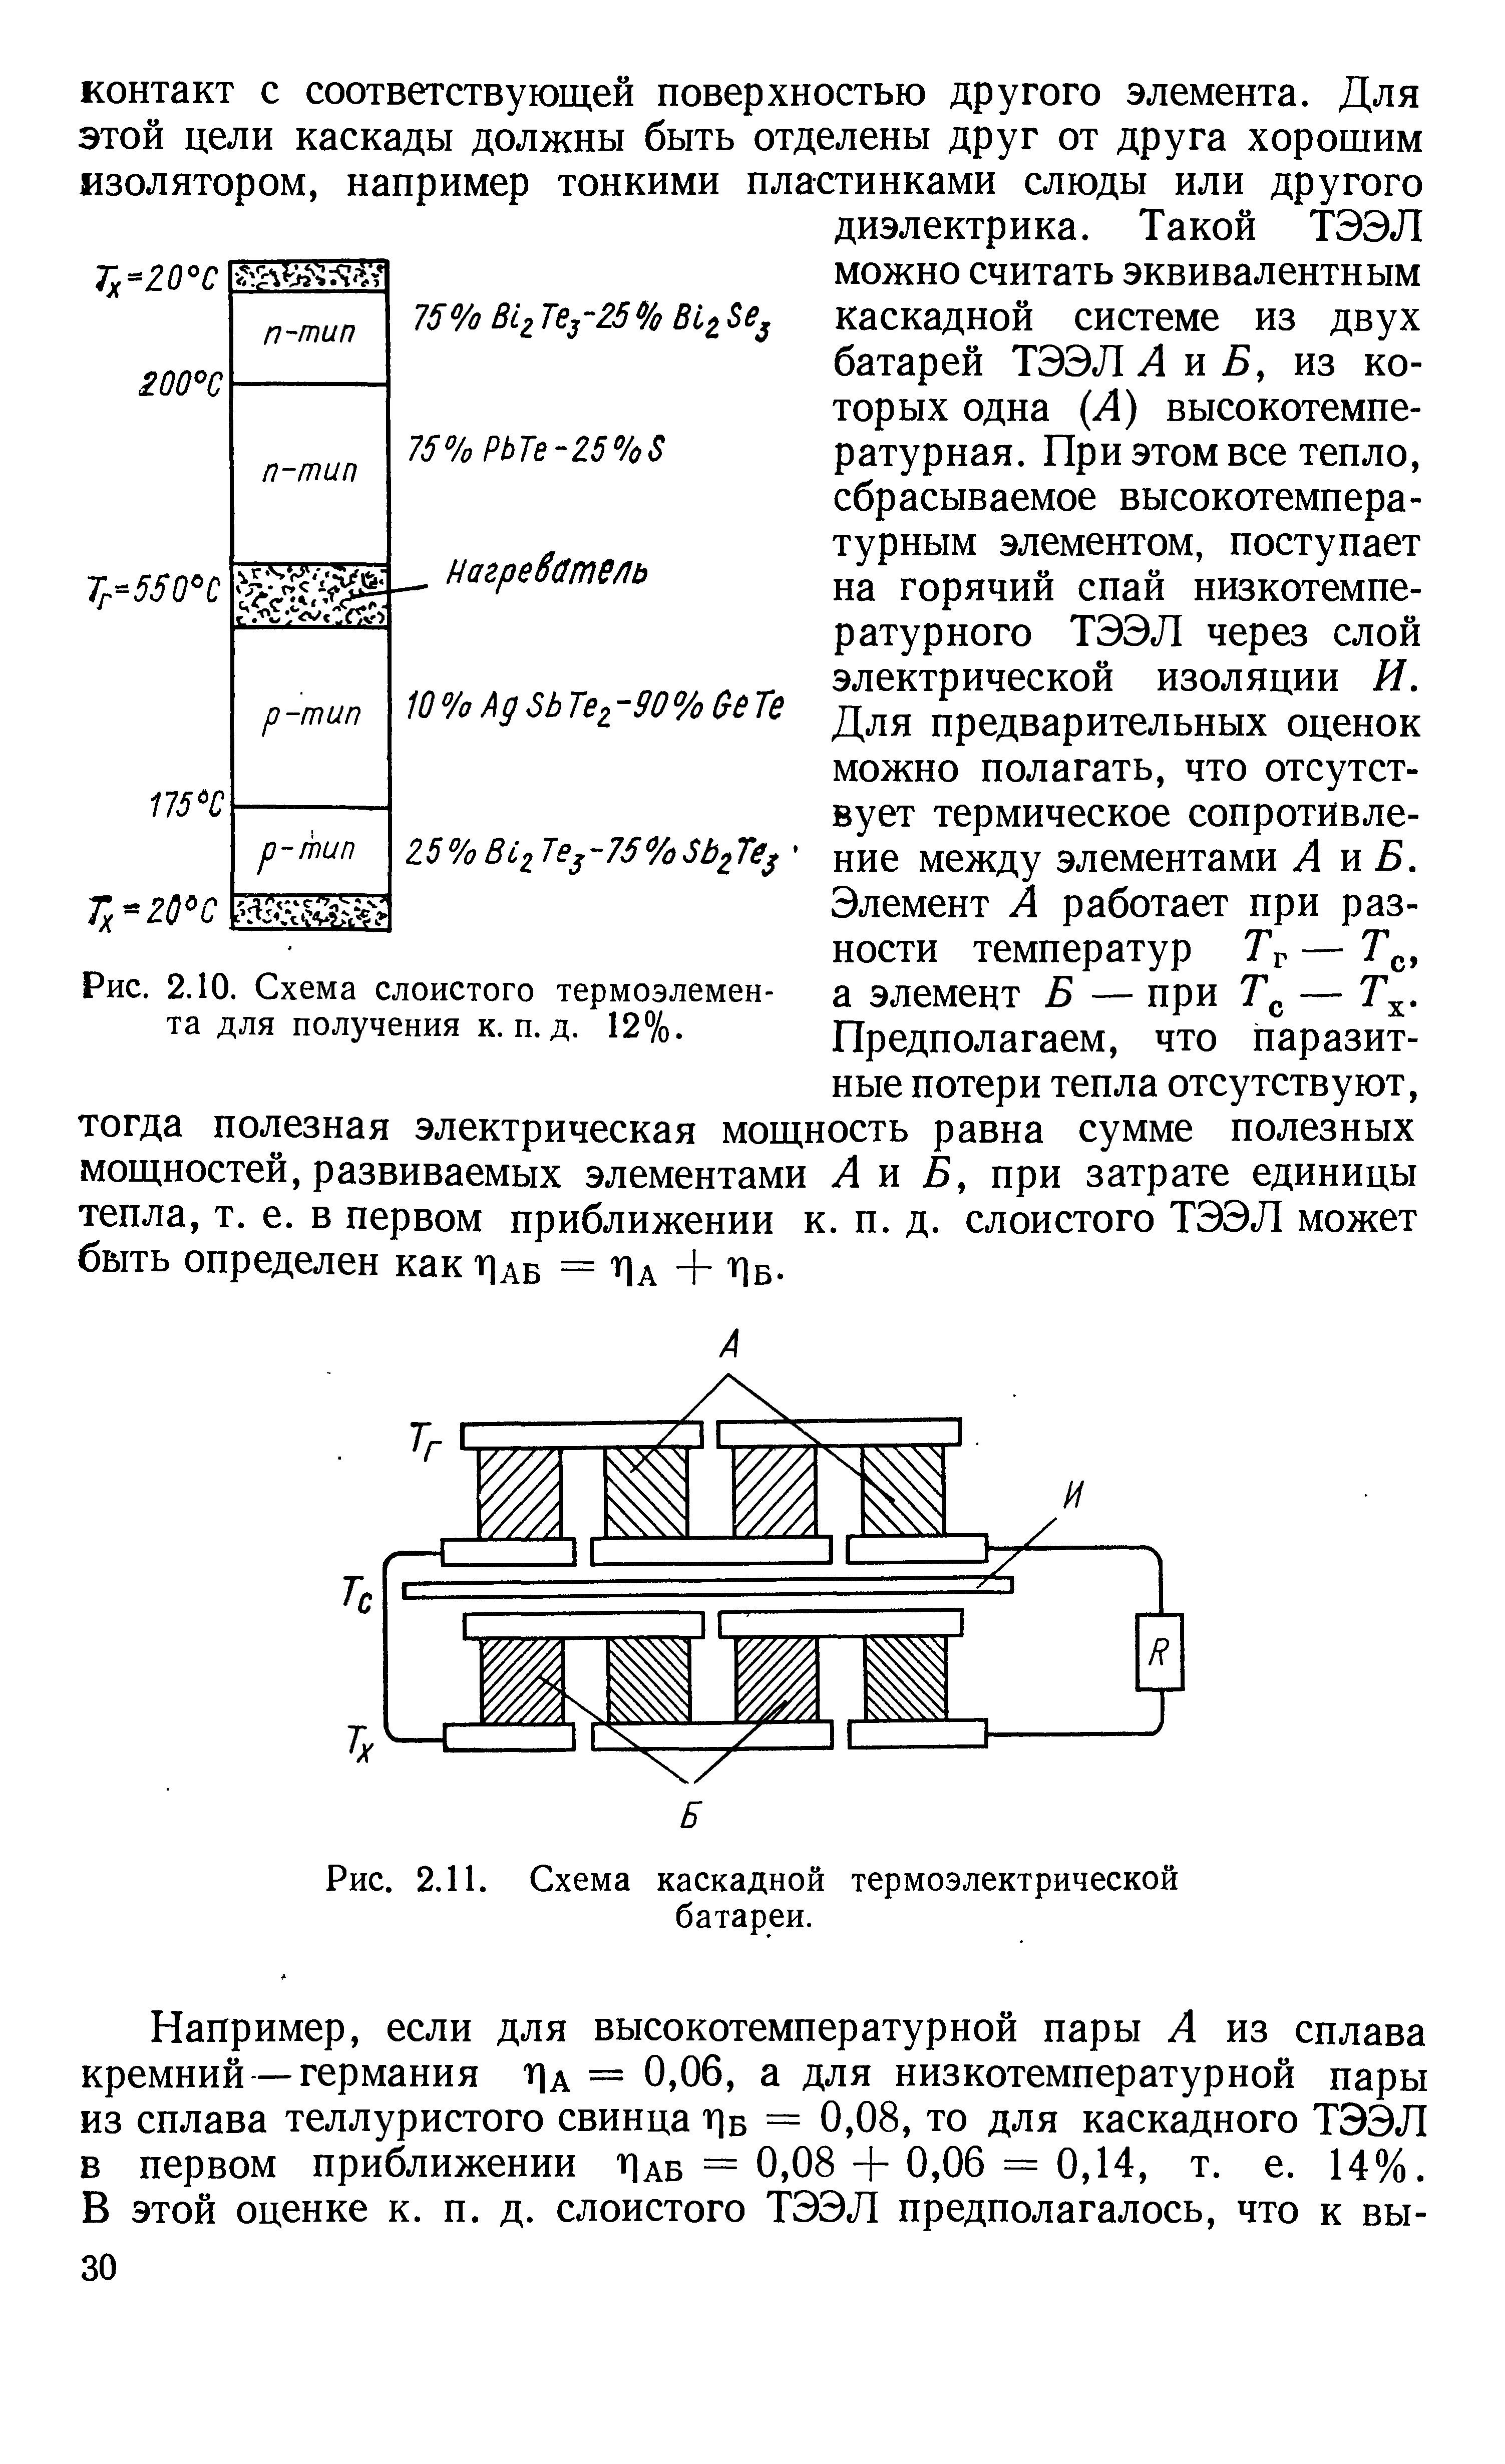 Рис. 2.11. Схема каскадной термоэлектрической
